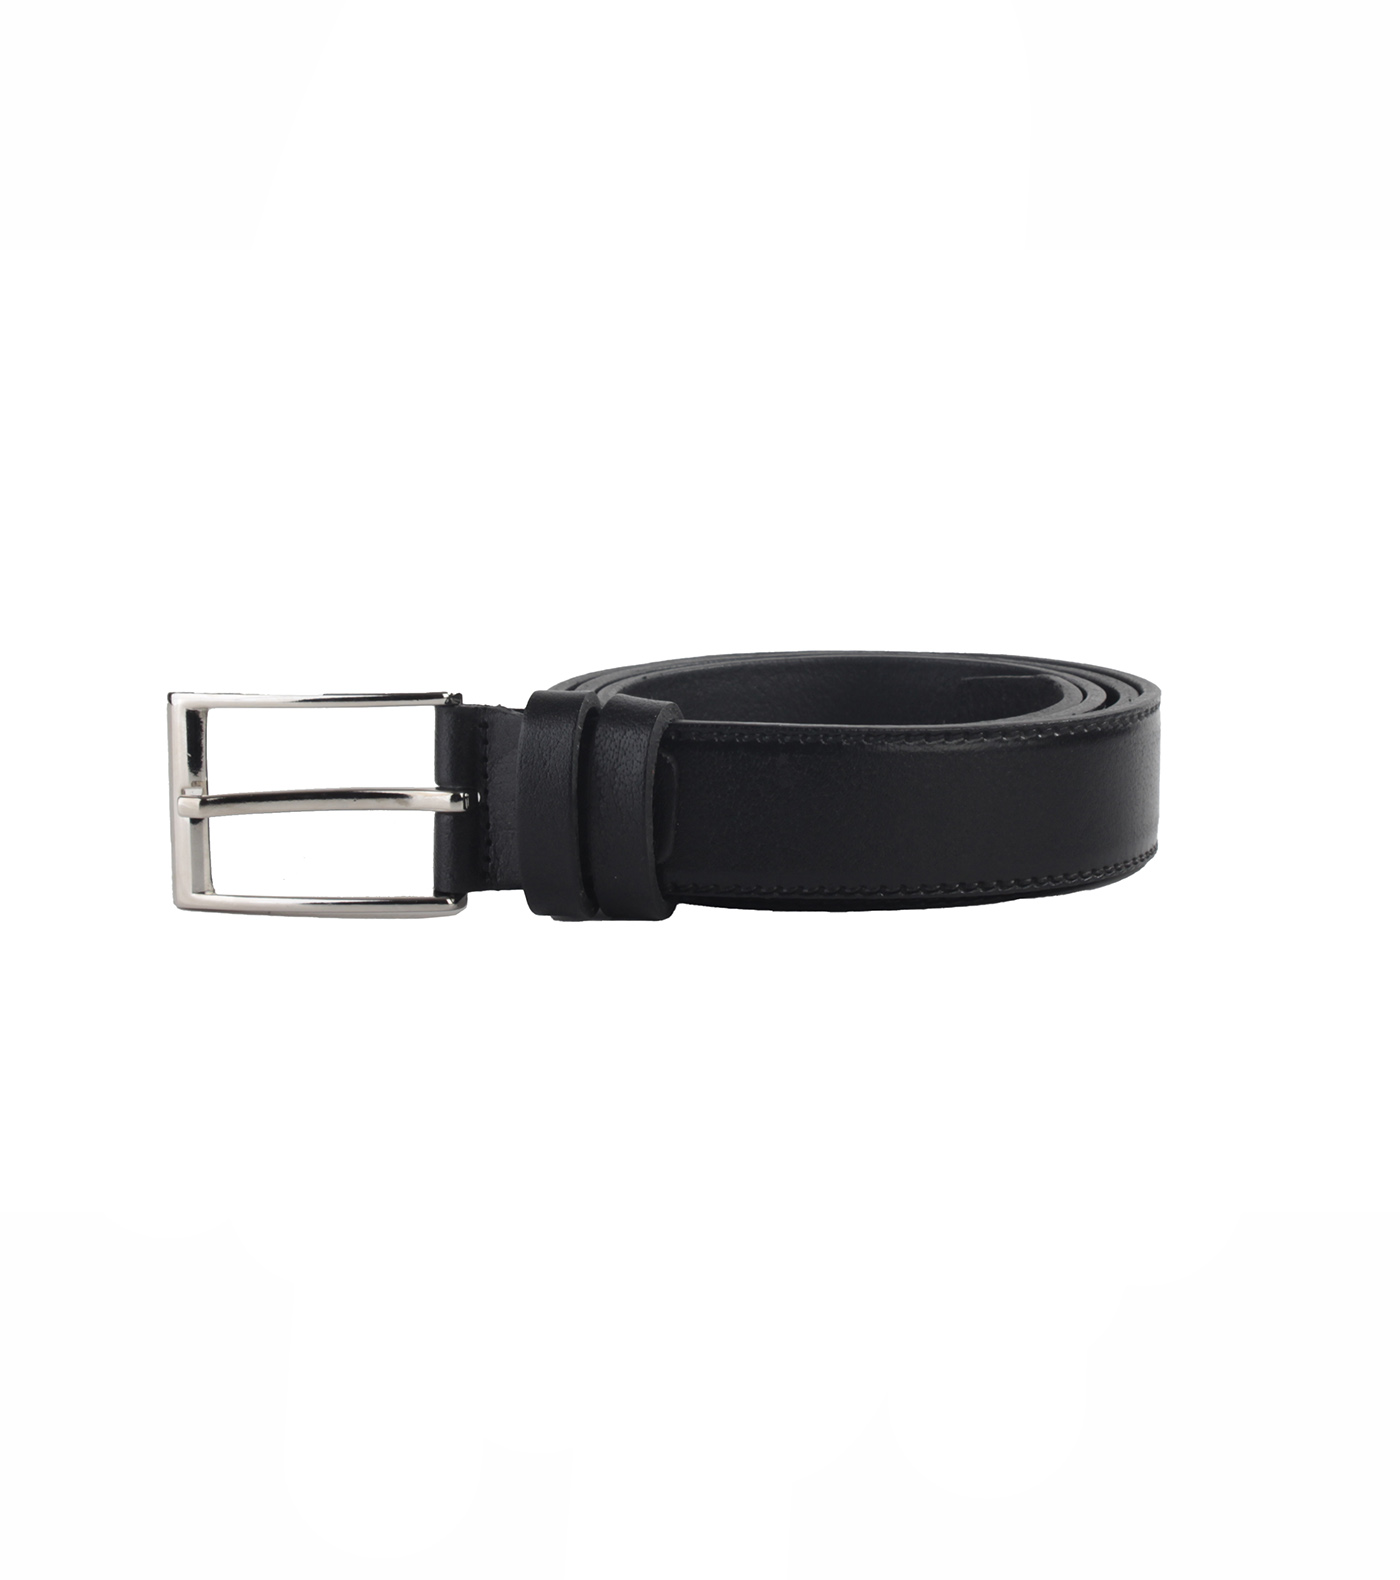 Dani -Soft Leather Belt model 601650021010